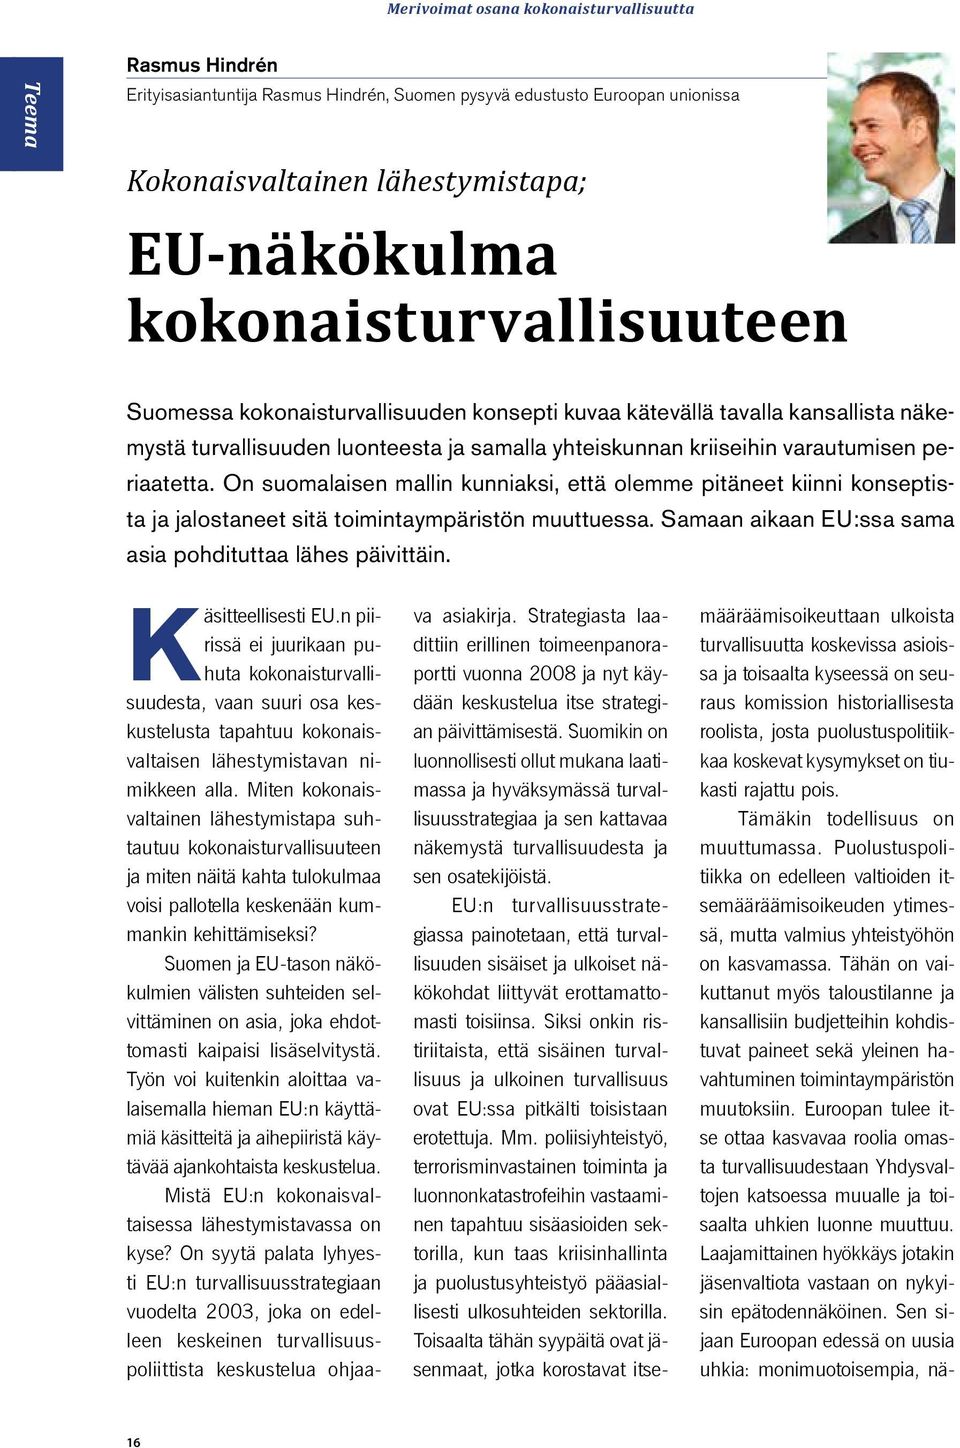 On suomalaisen mallin kunniaksi, että olemme pitäneet kiinni konseptista ja jalostaneet sitä toimintaympäristön muuttuessa. Samaan aikaan EU:ssa sama asia pohdituttaa lähes päivittäin.